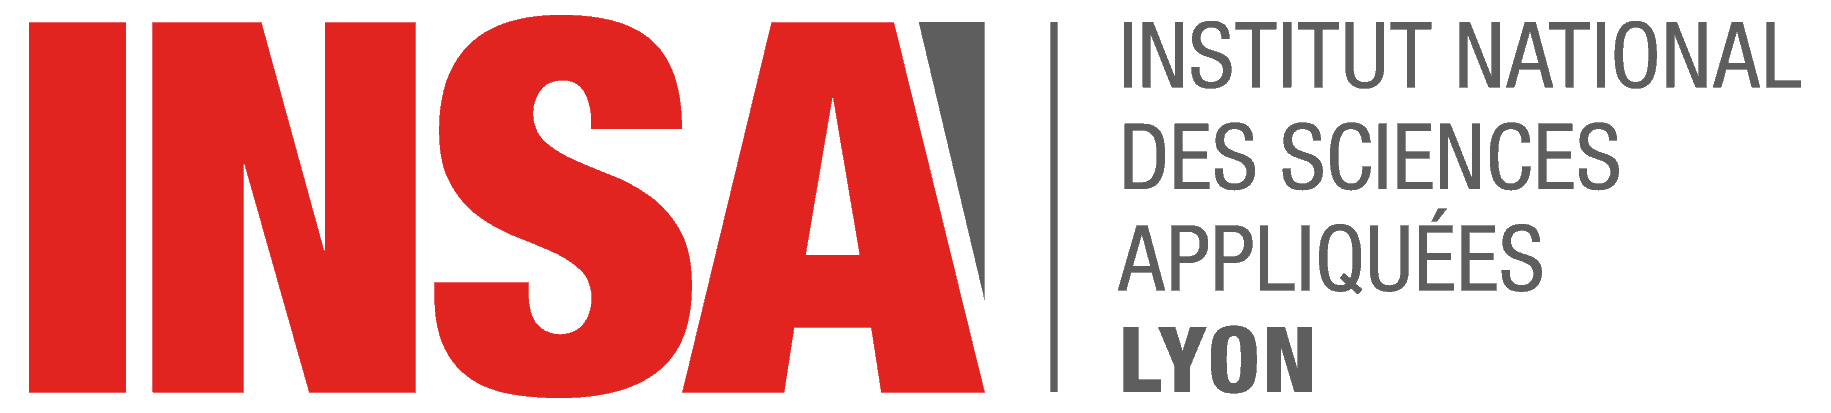 Logo INSA Lyon 2014